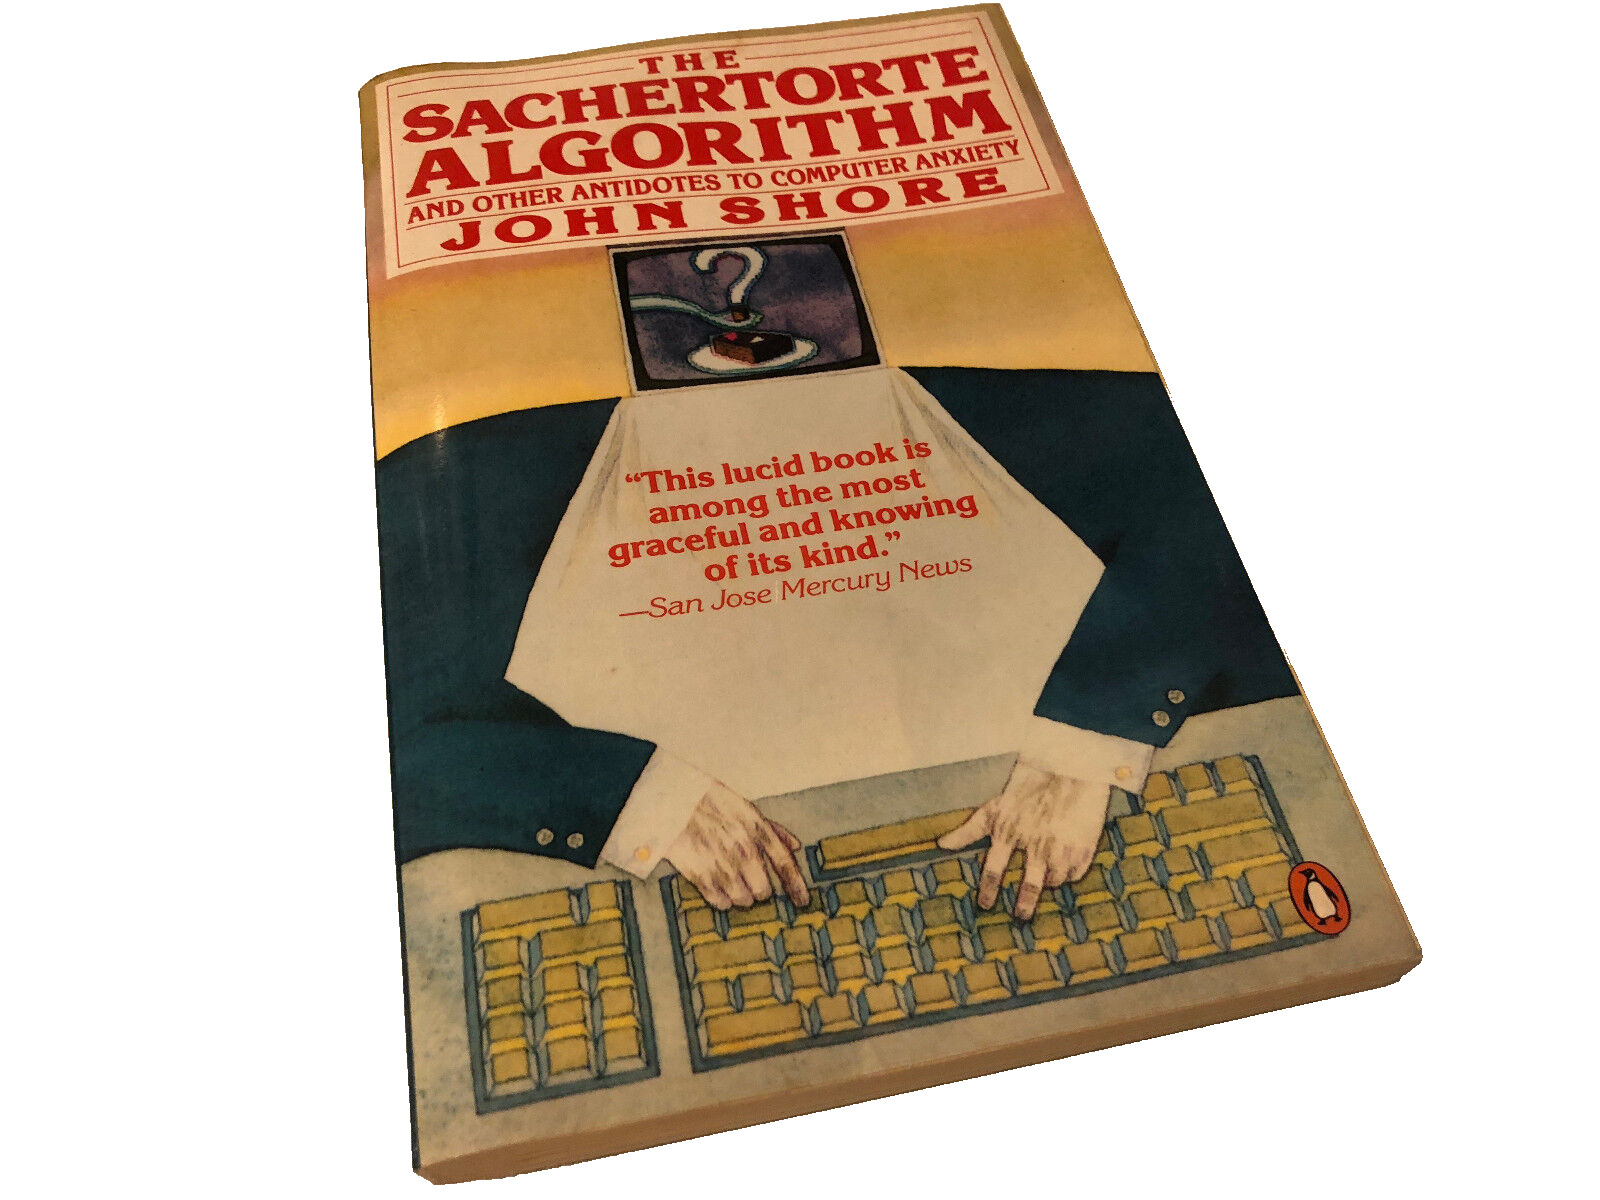 SACHERTORTE ALGORITHM JOHN SHORE LAST ONE RARE COLLECTIBLE BOOK